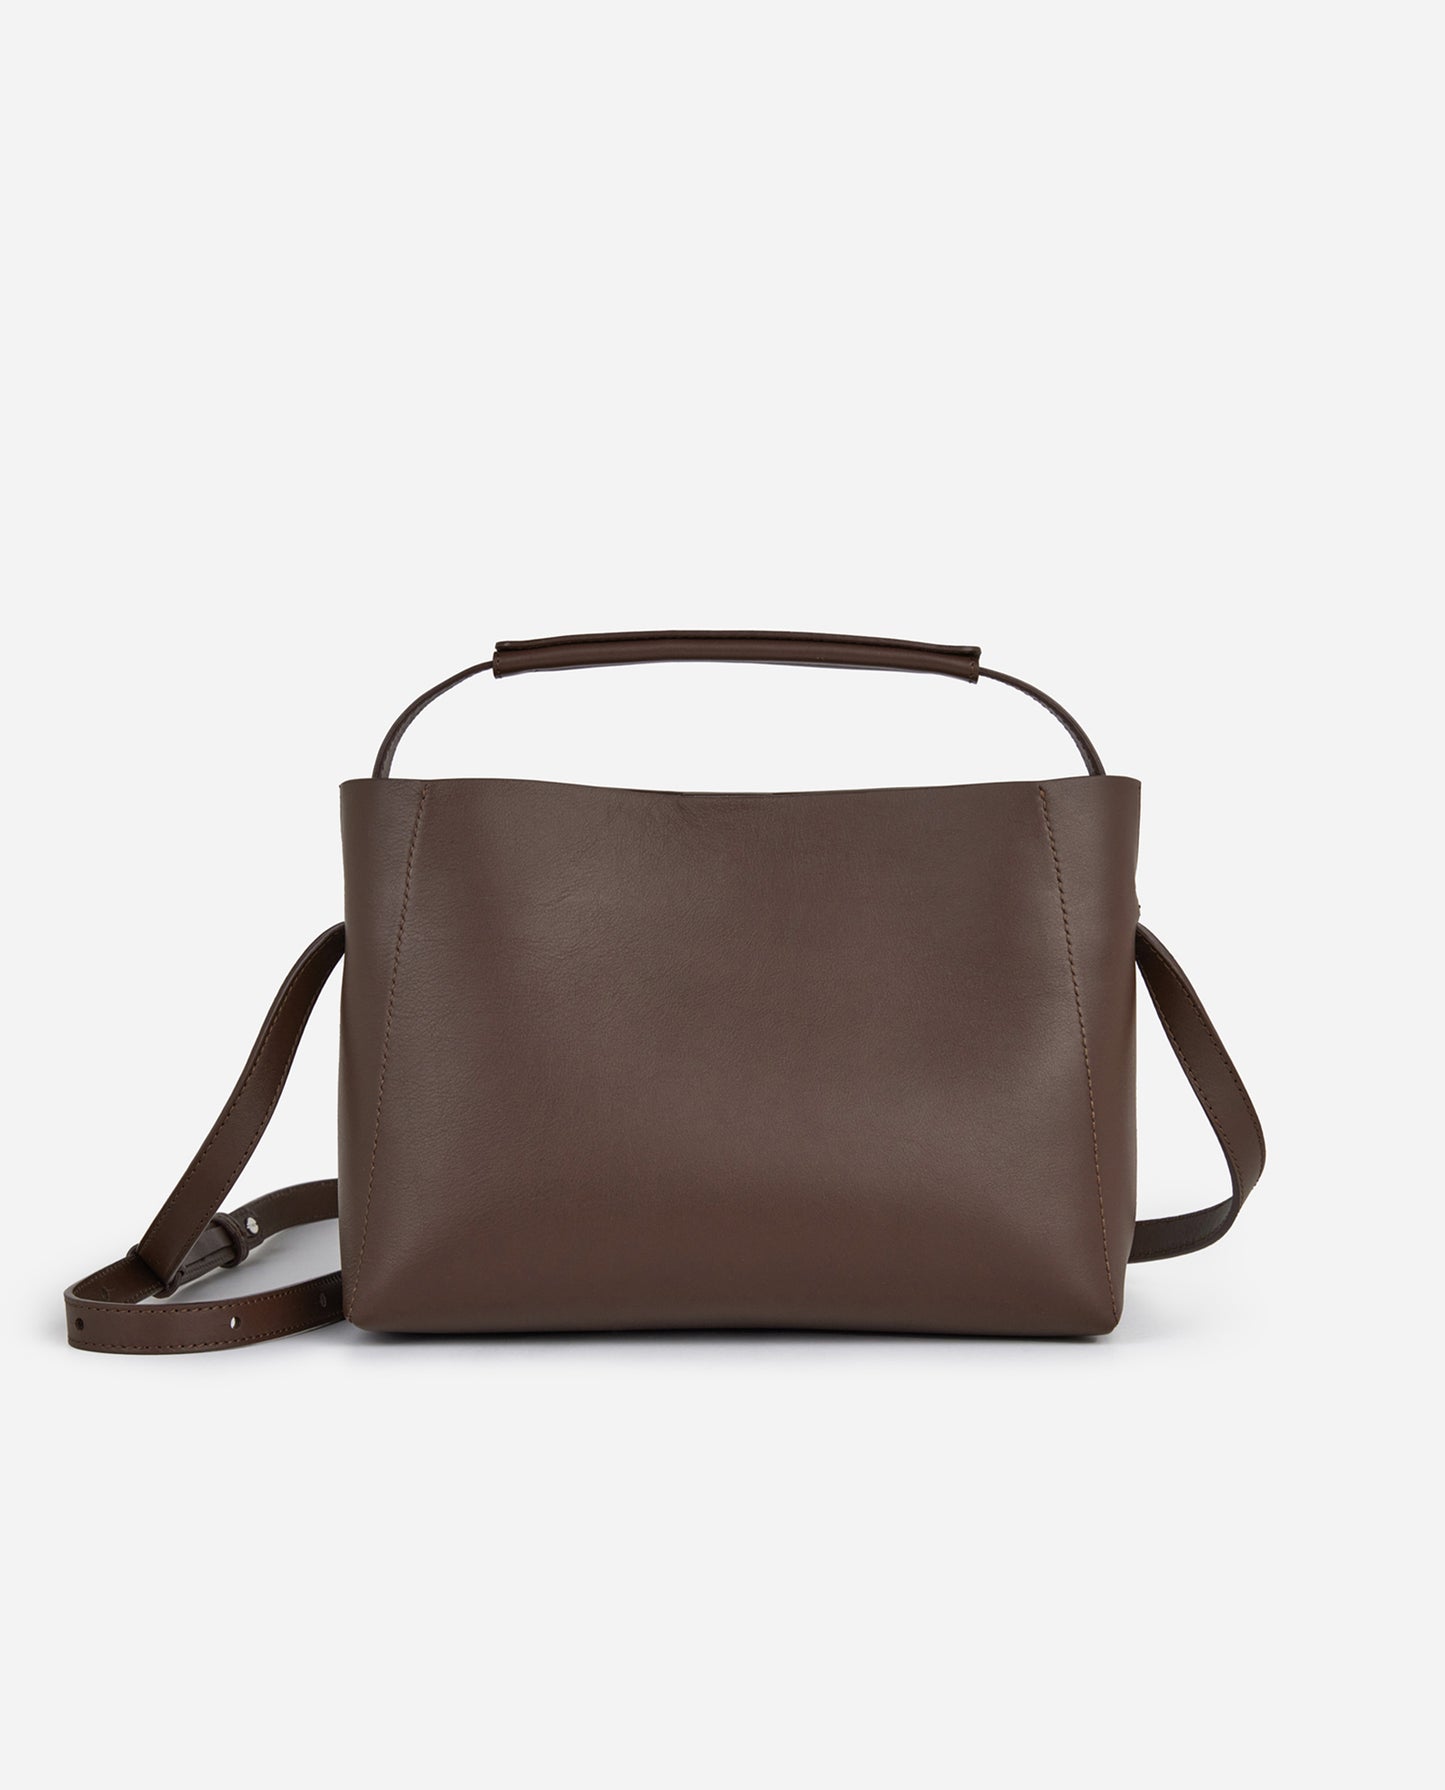 Hedda Grande Handbag Brown Leather